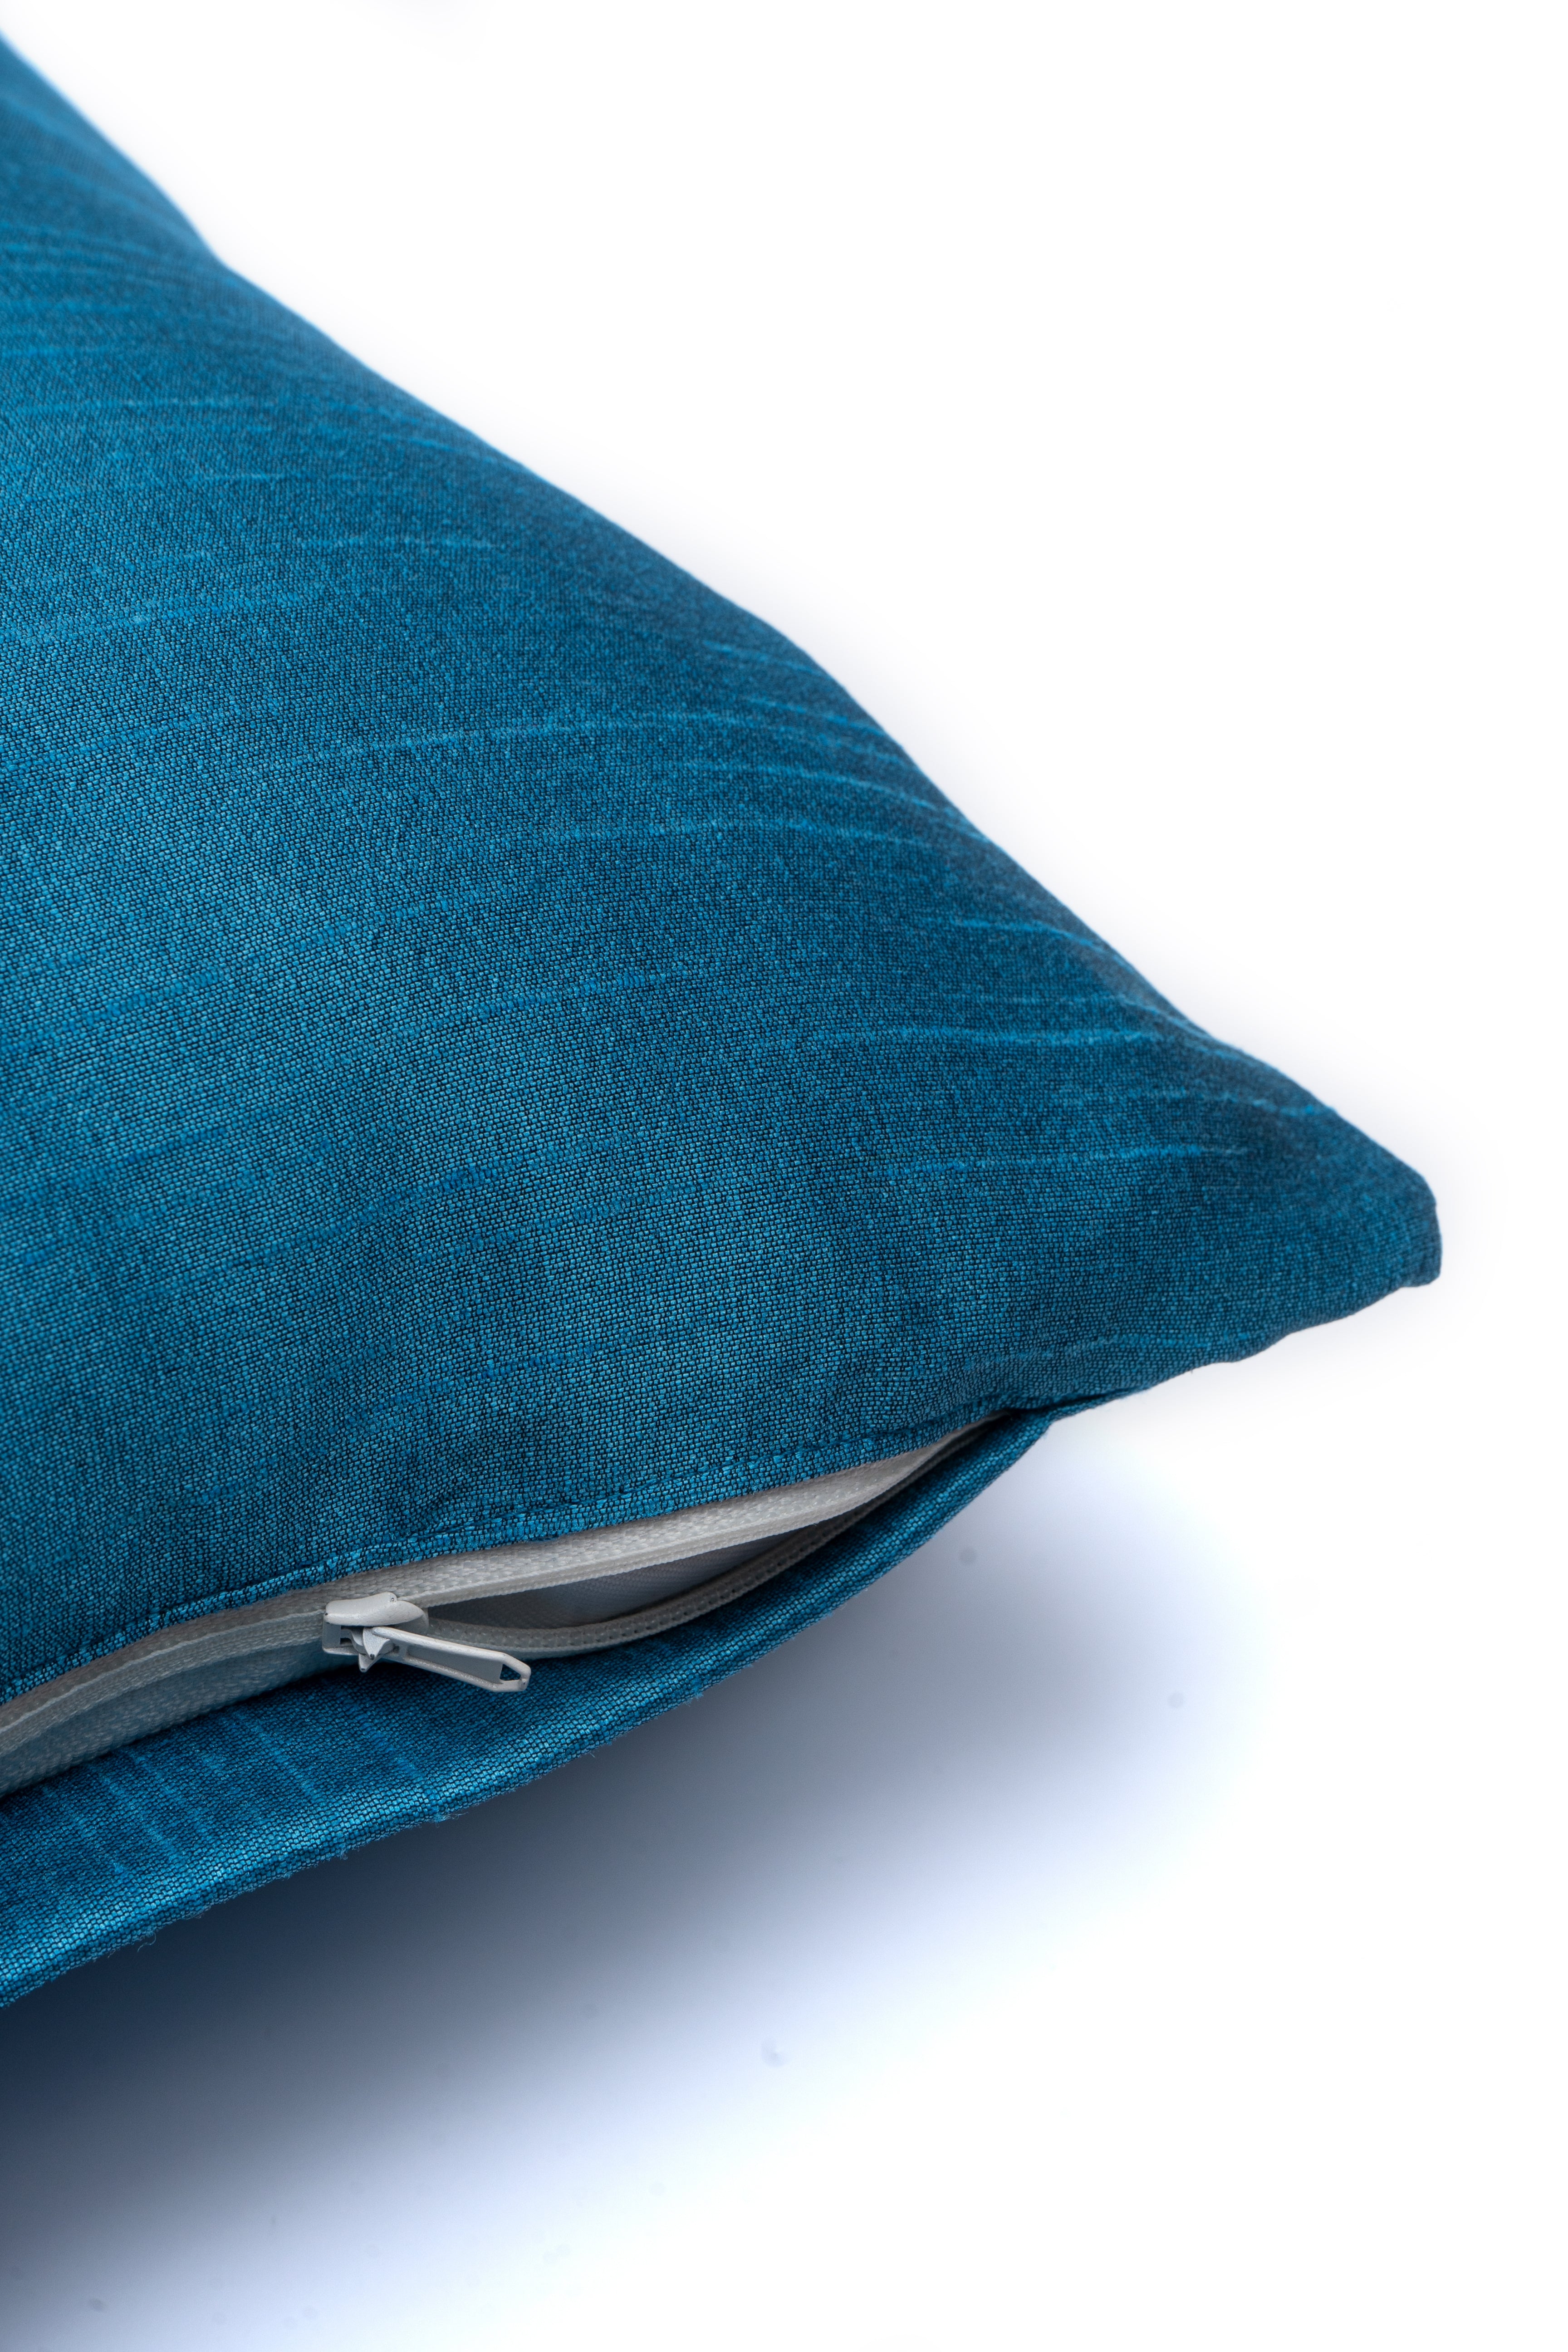 Blue Plain Cushion Cover